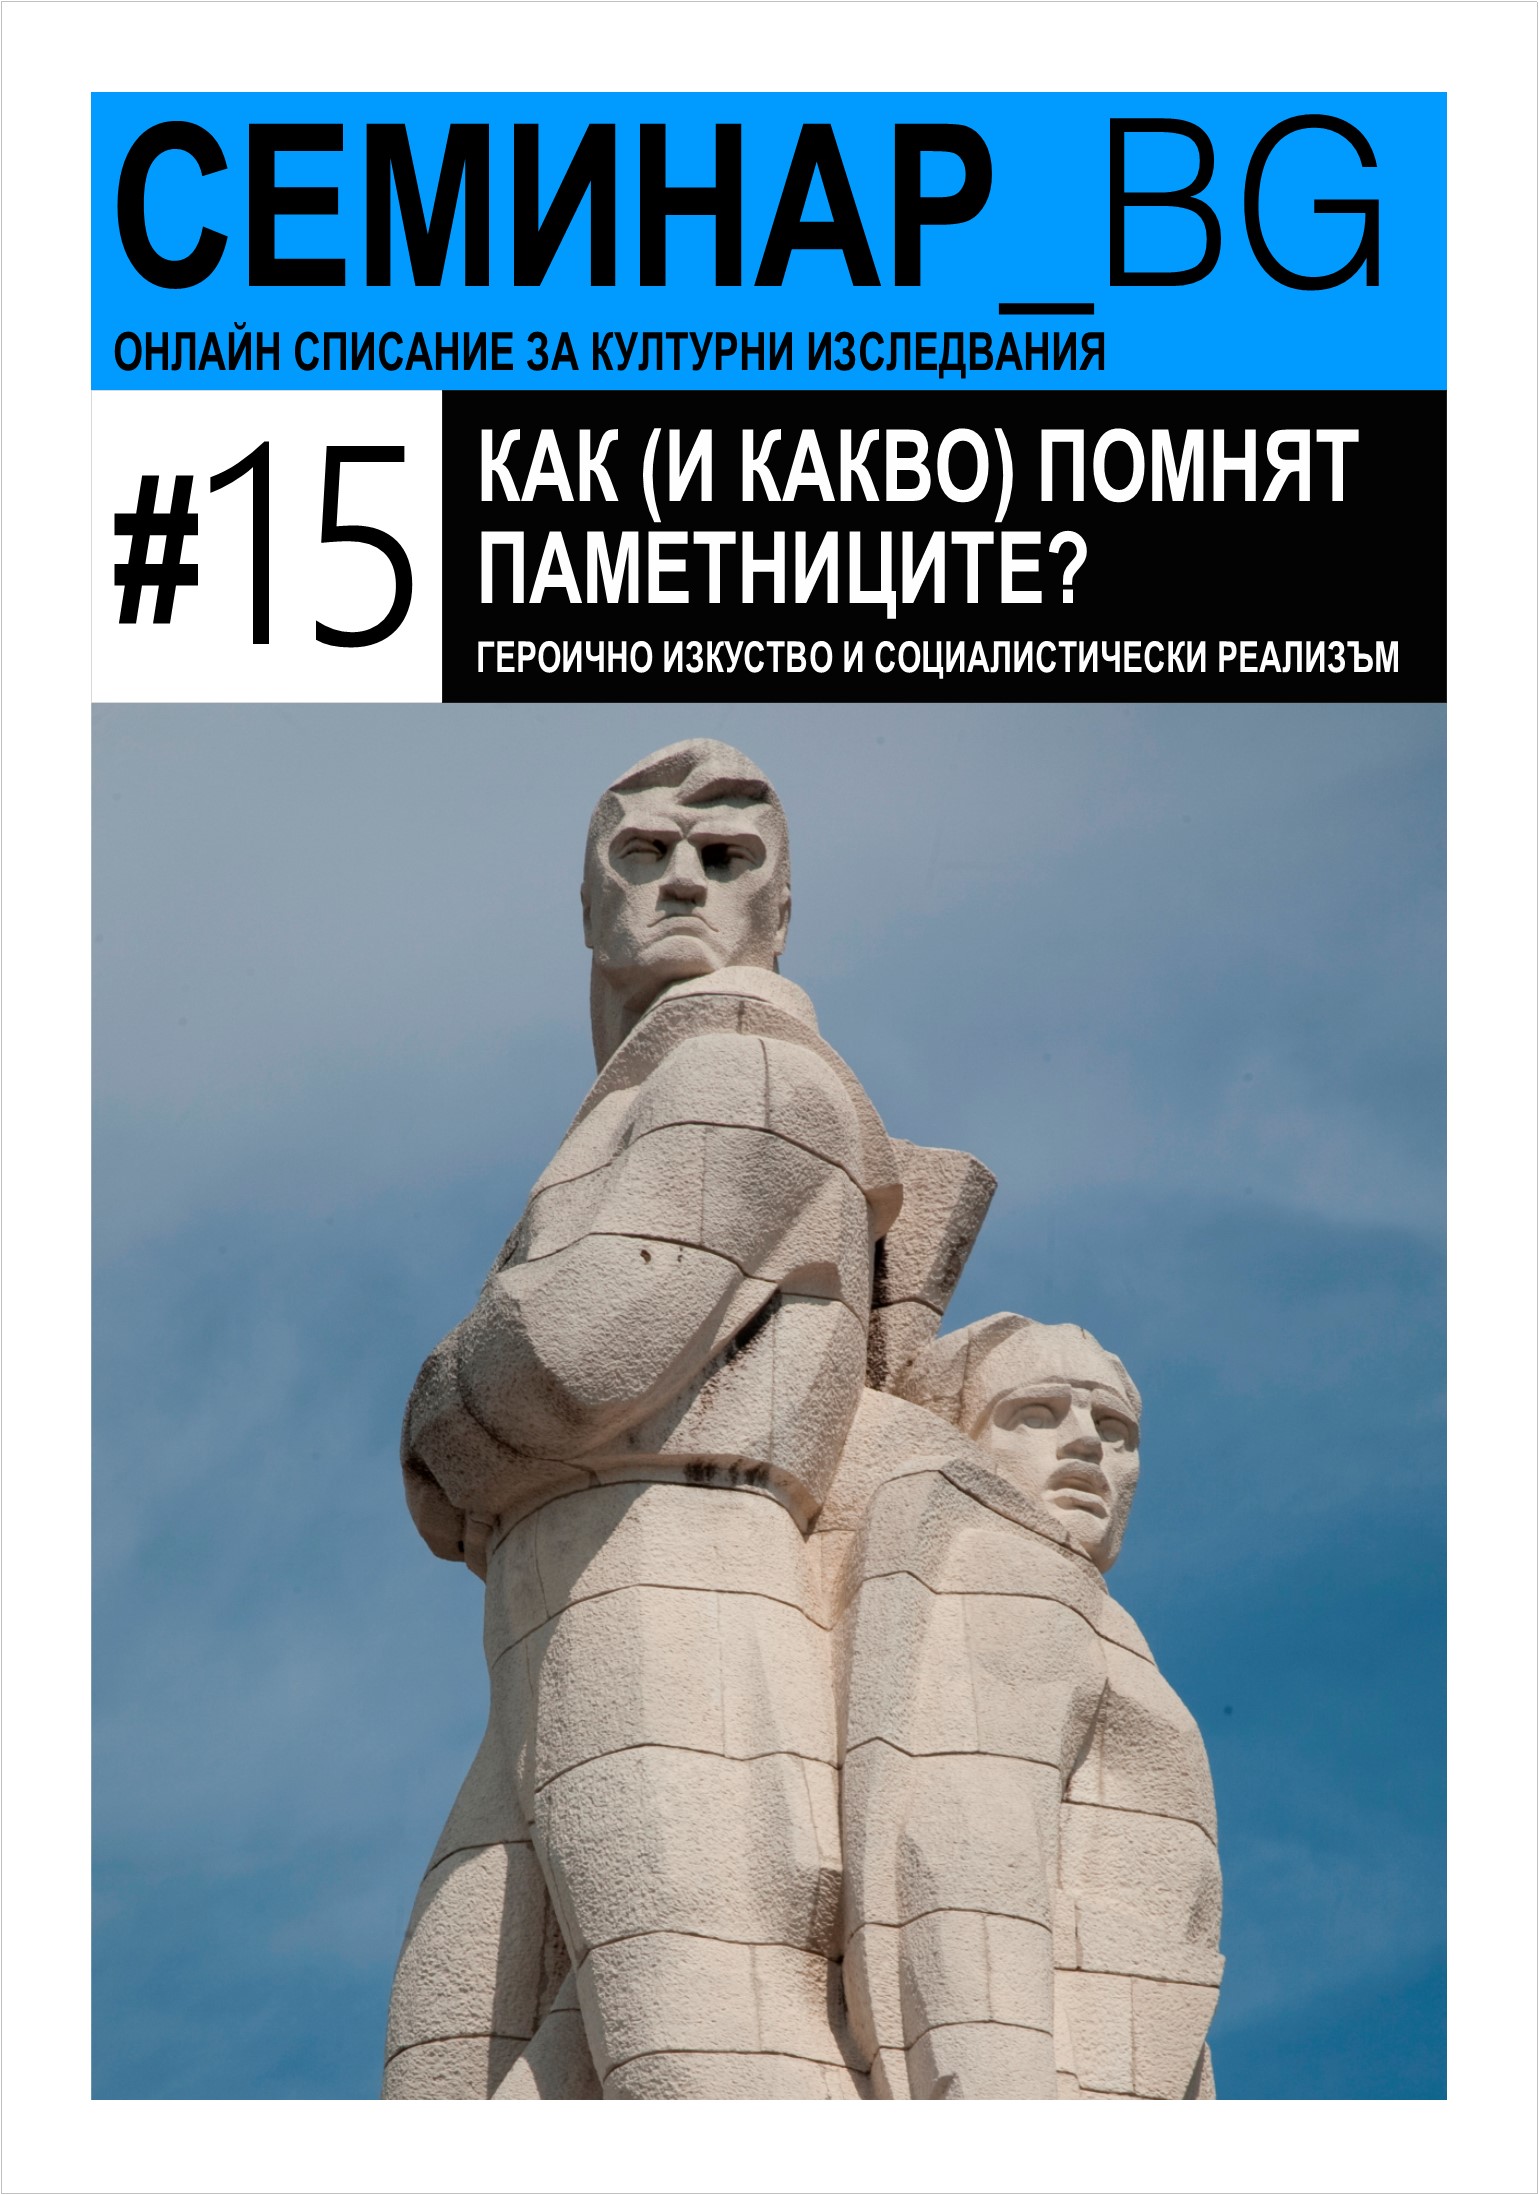 Нашите герои и техните паметници: два казуса от Югозападна България